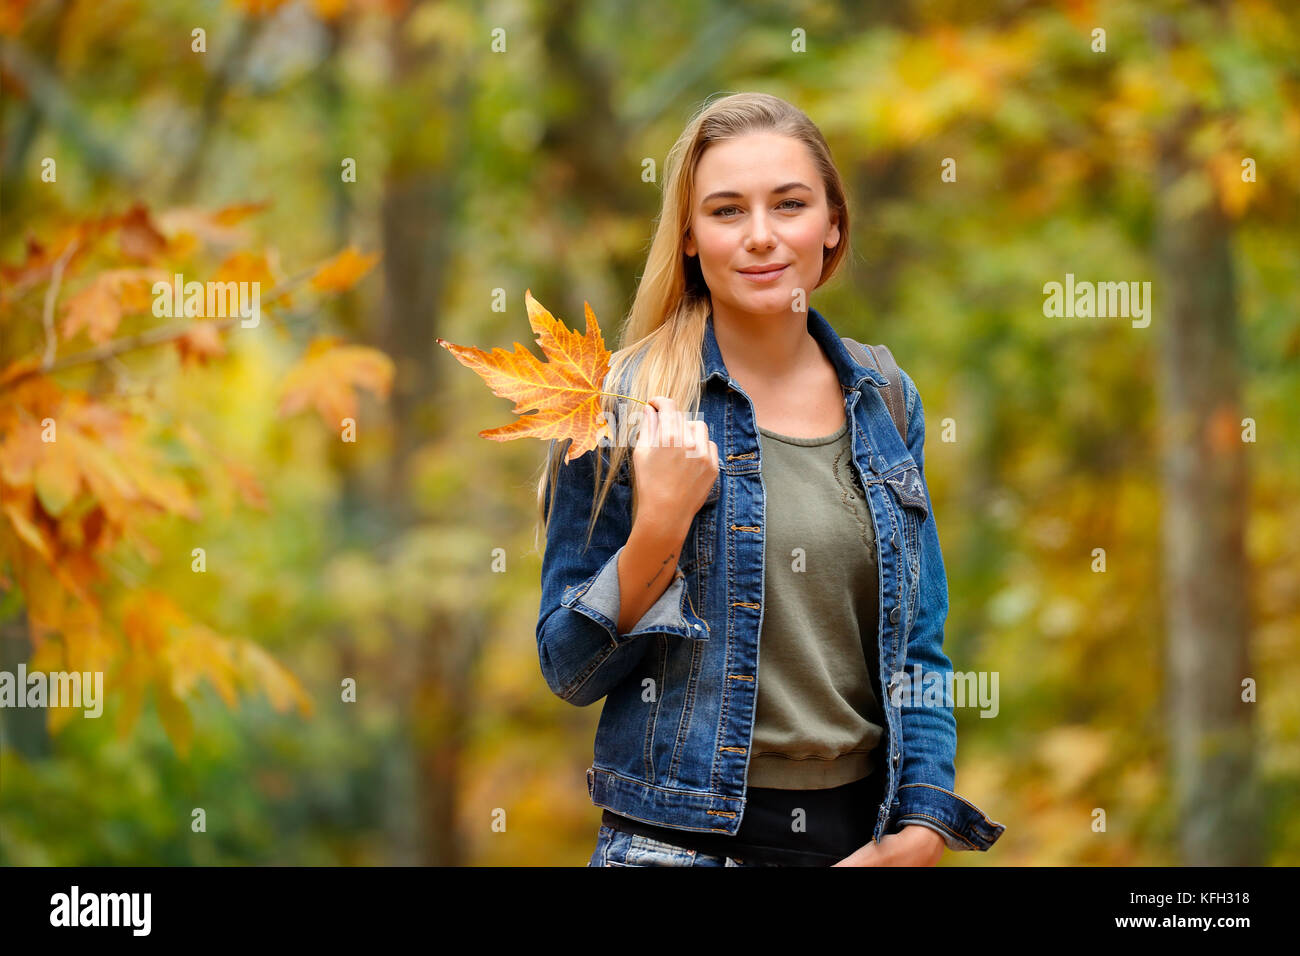 Porträt einer schönen blonden Frau Holding in der Hand schön trocken Gelb maple leaf über herbstliches Laub Hintergrund, Spaß im Herbst Park Stockfoto